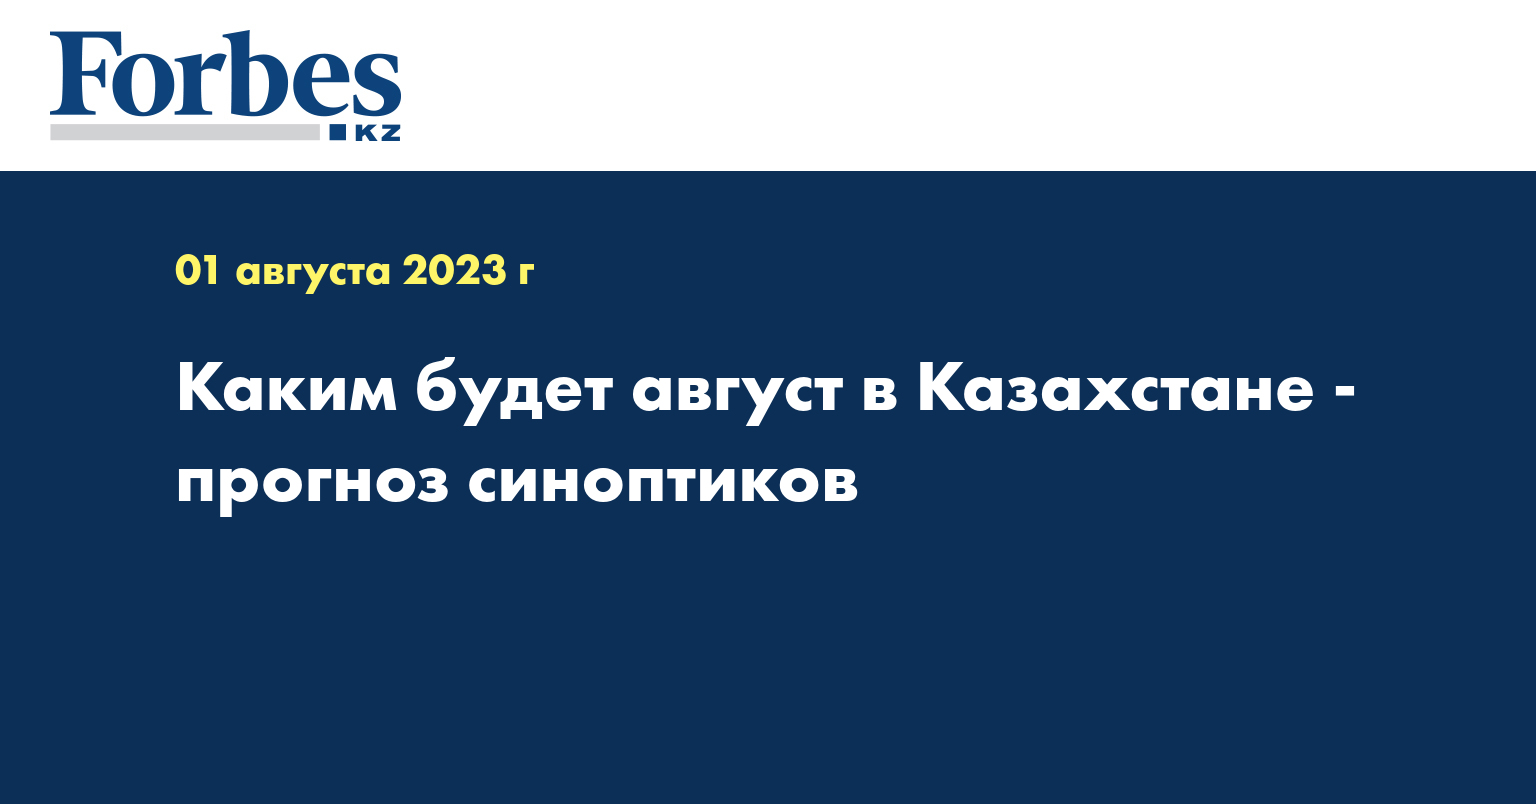 Каким будет август в Казахстане - прогноз синоптиков